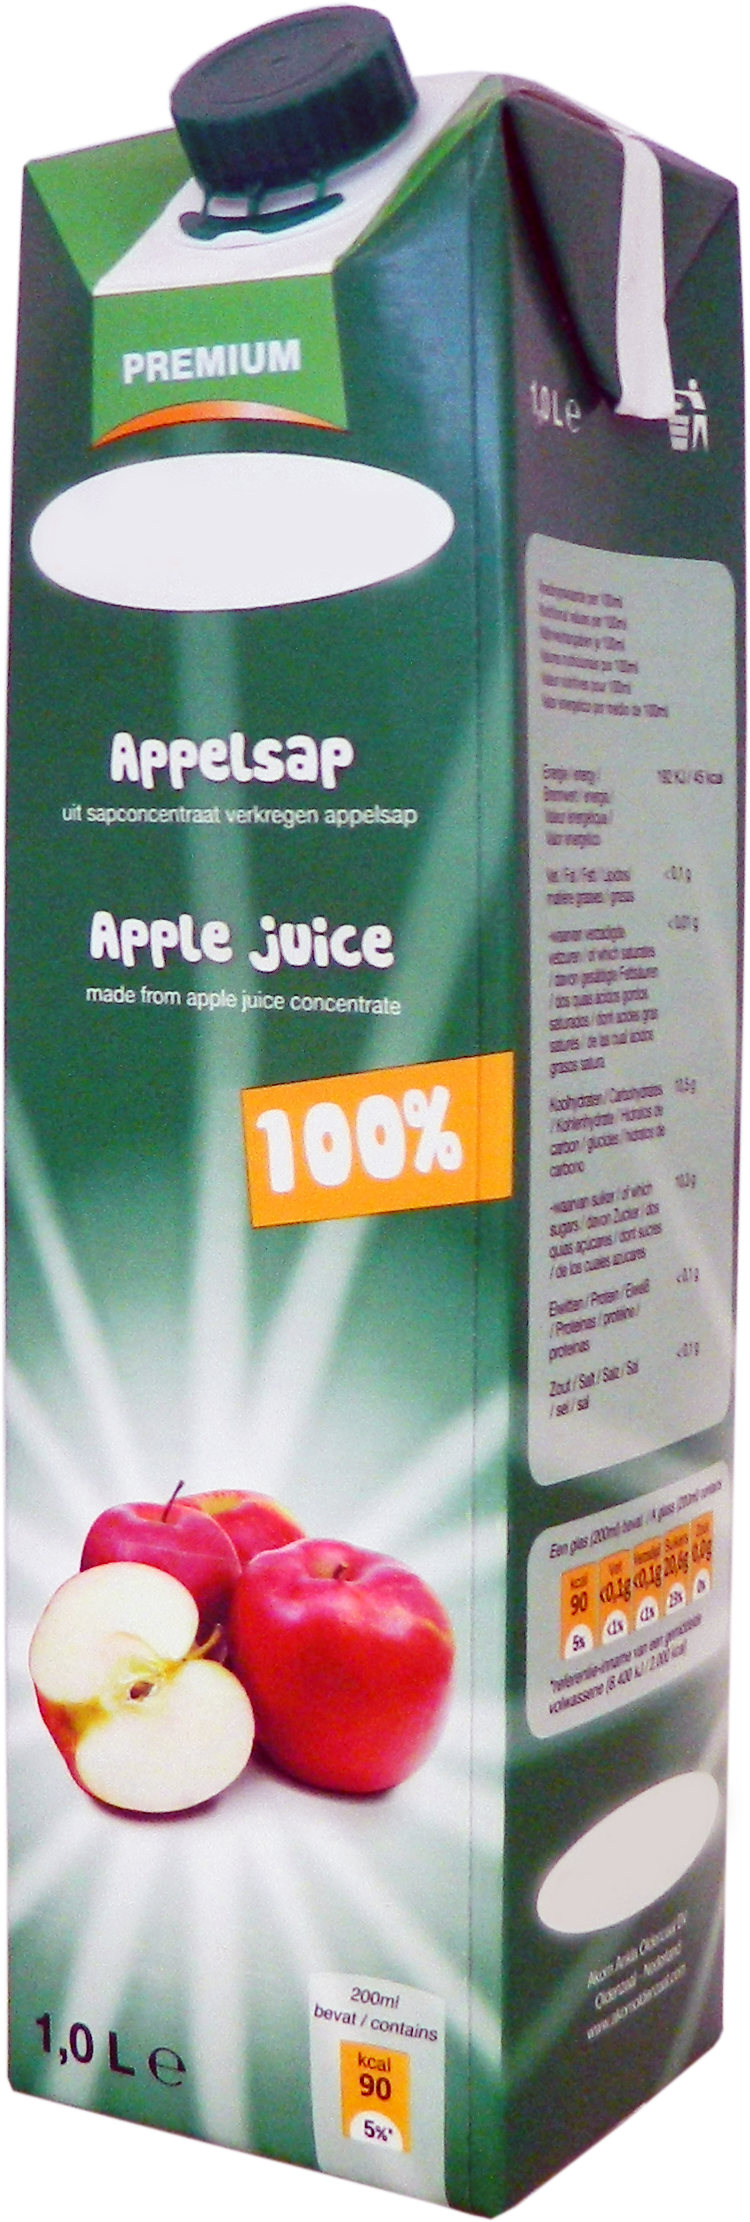 Premium Appelsap 1,0 liter